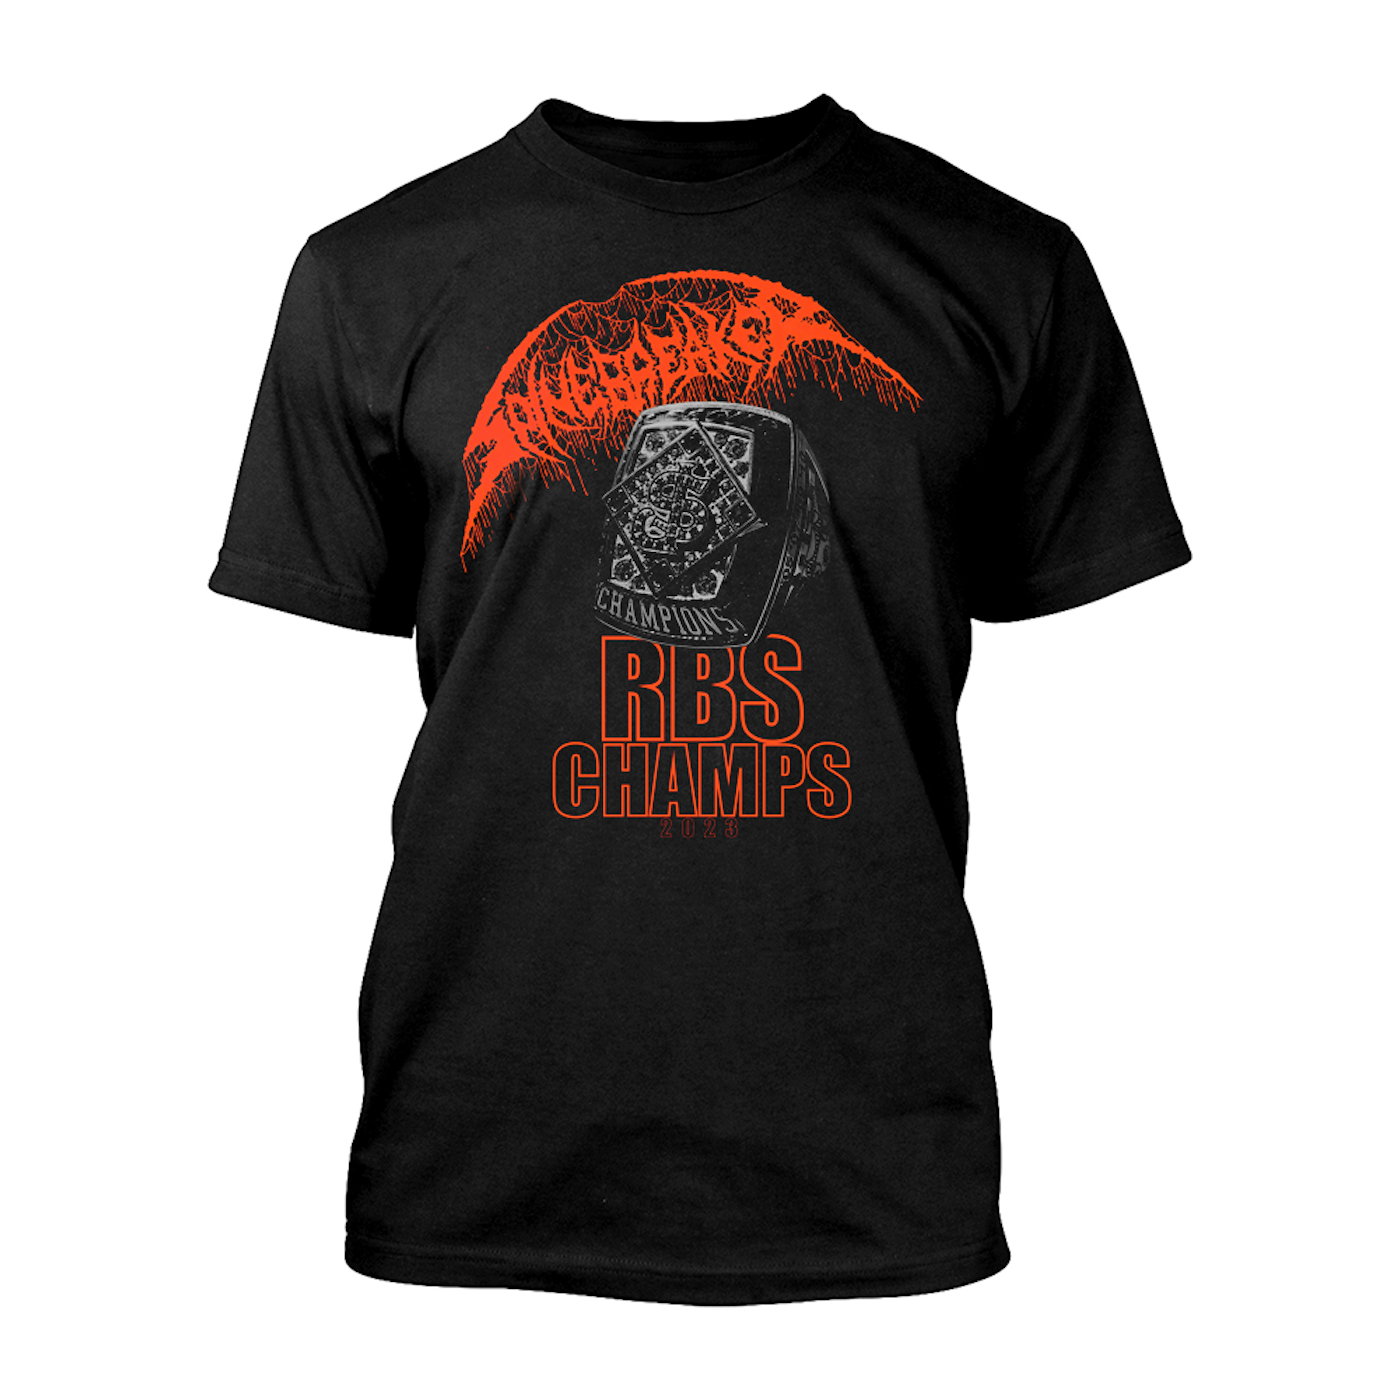 Spinebreaker "RBS Champs" T-Shirt